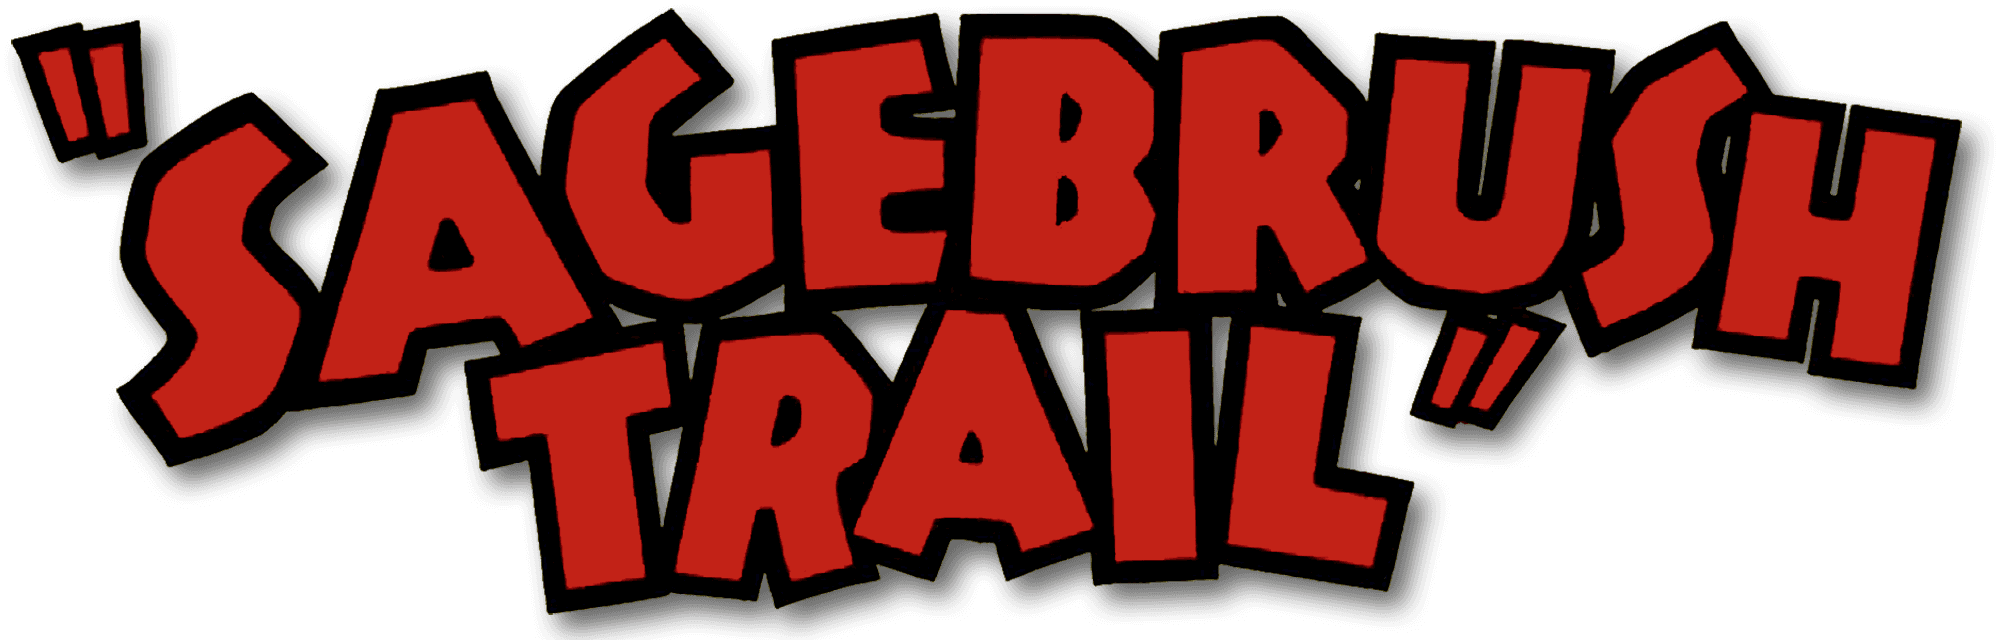 Sagebrush Trail logo